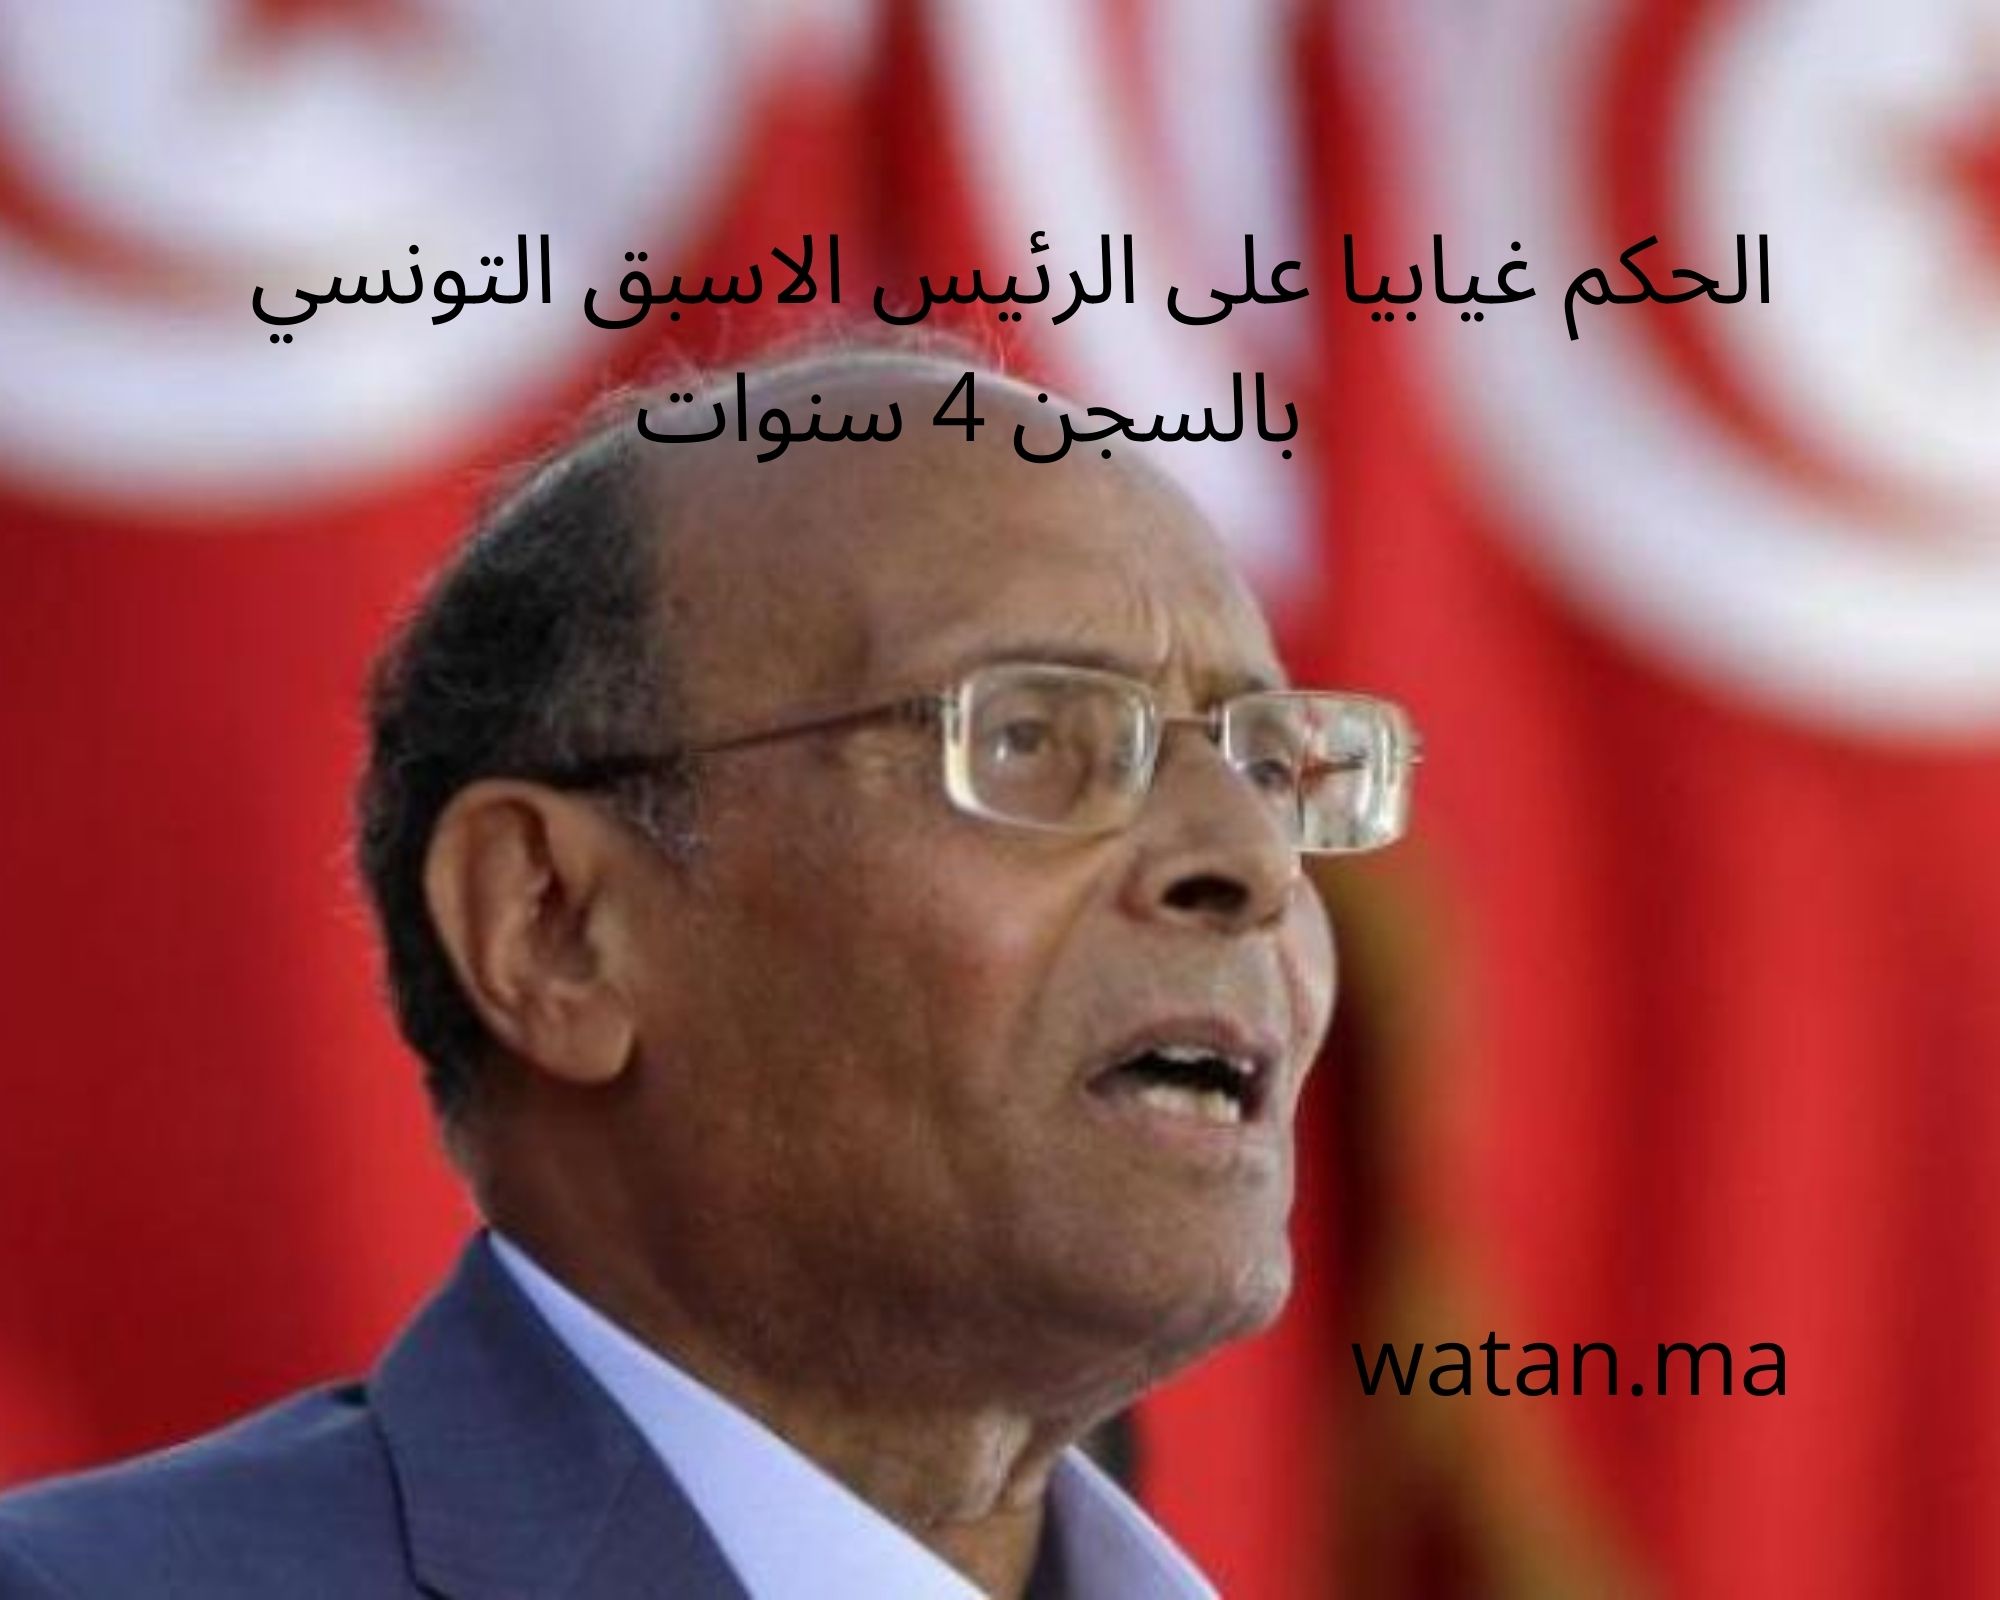 الحكم غيابيا على الرئيس الاسبق التونسي بالسجن 4 سنوات